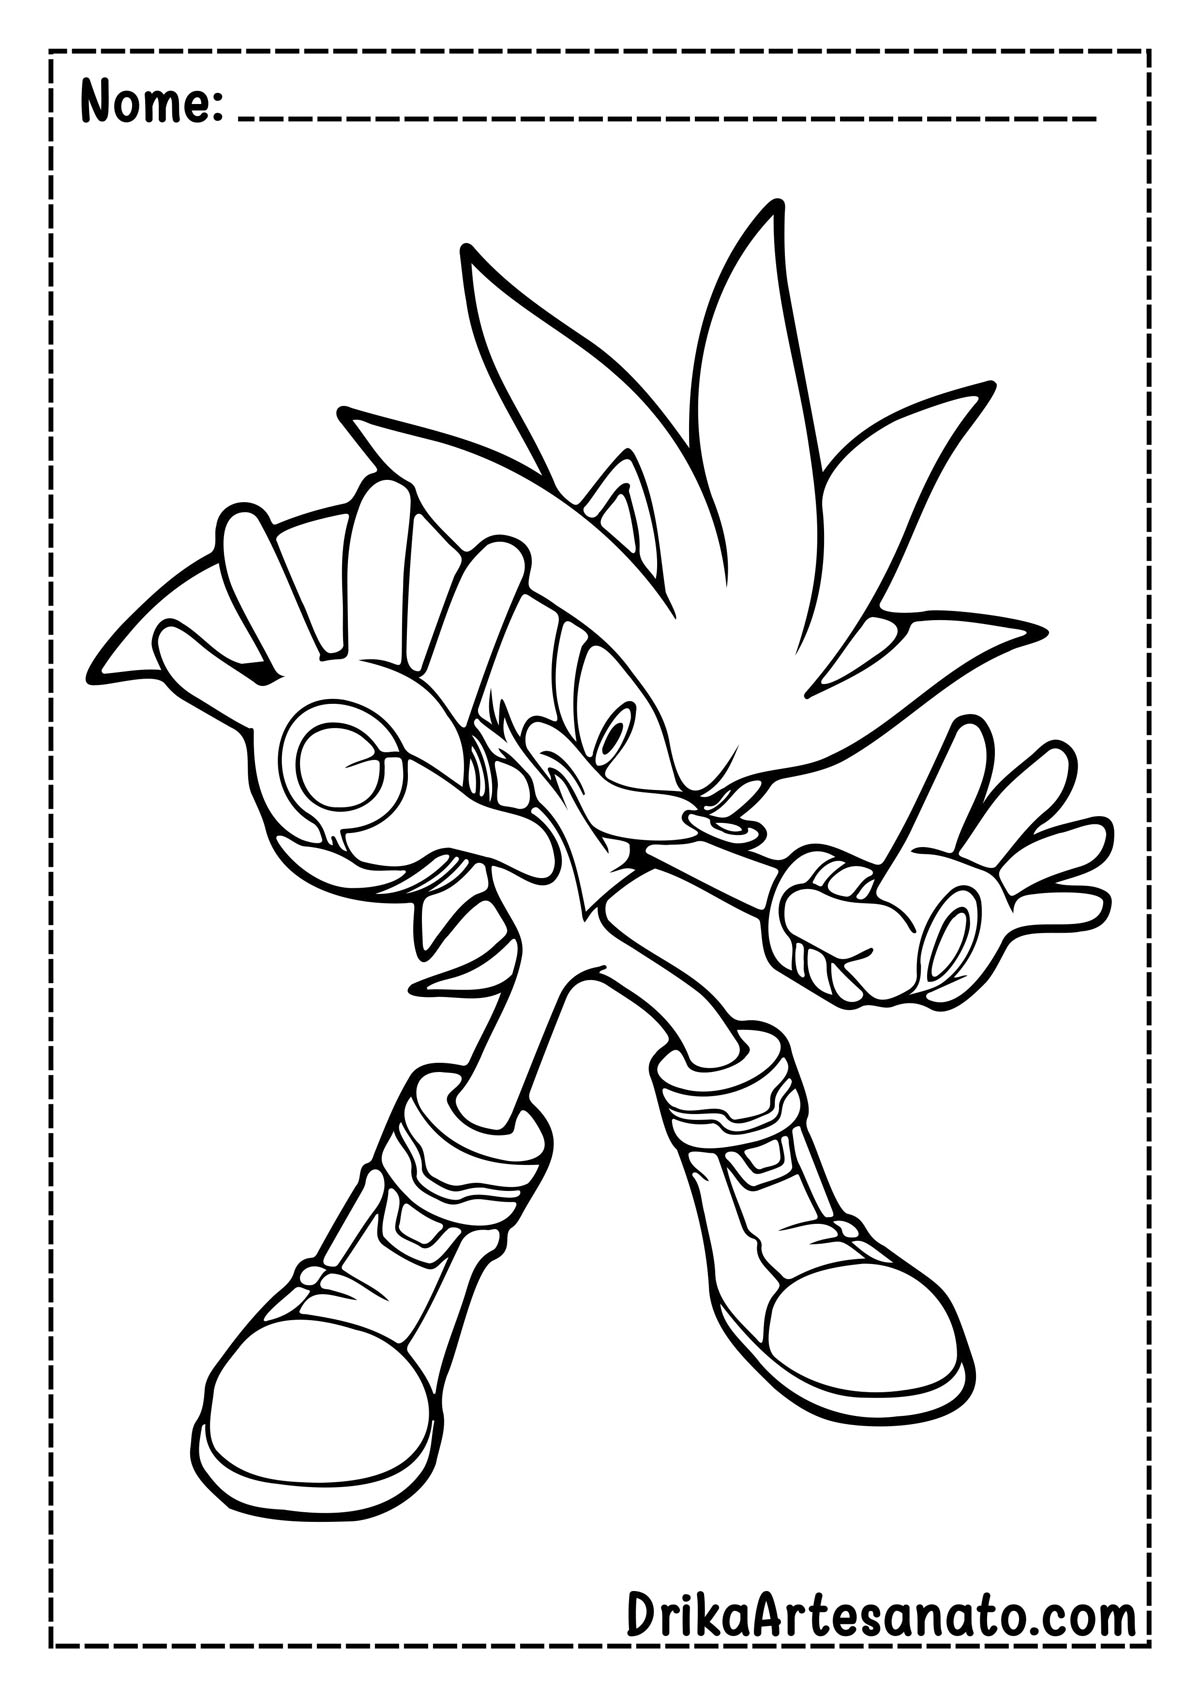 Desenho do Sonic para Imprimir e Pintar